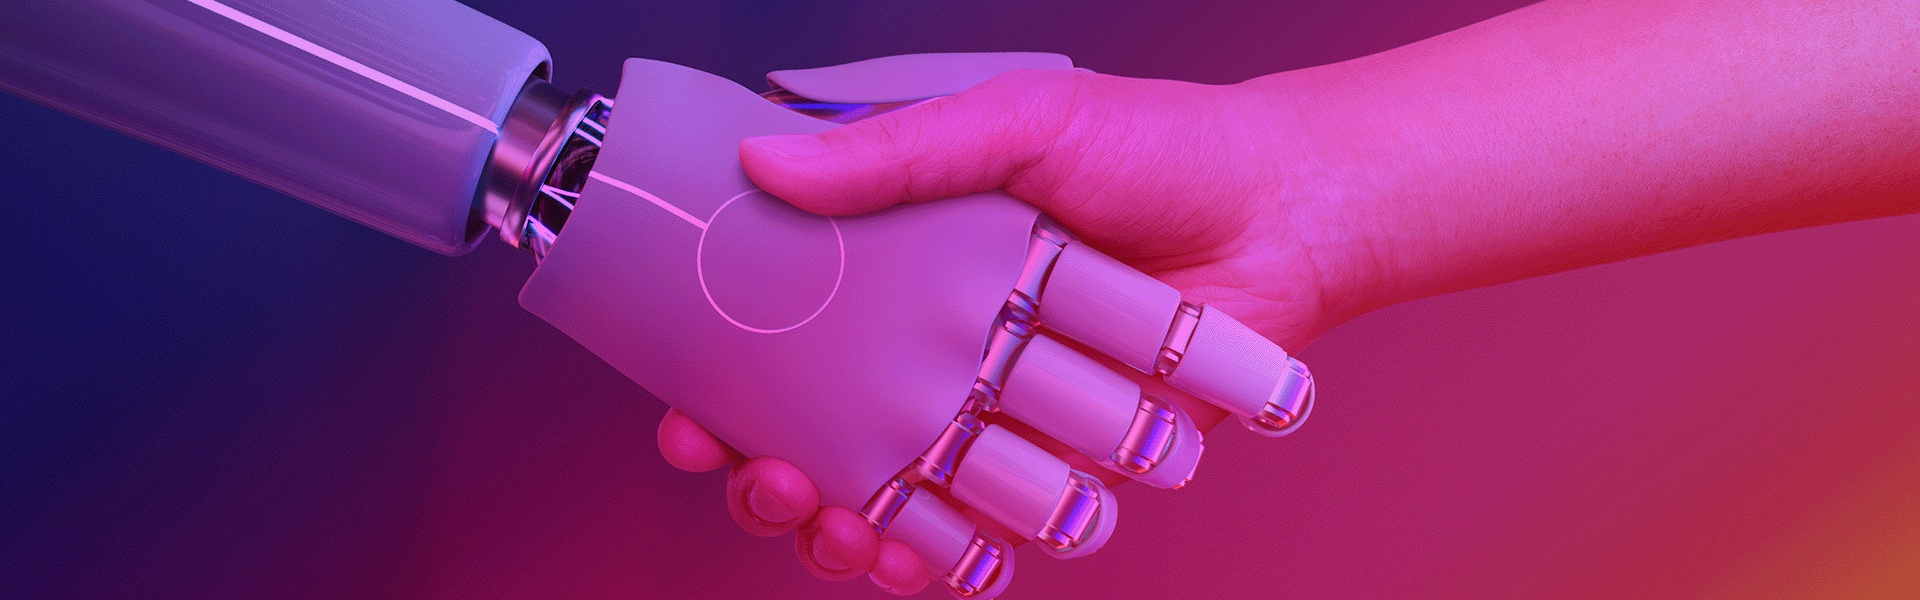 Mão de robô apertando mão humana